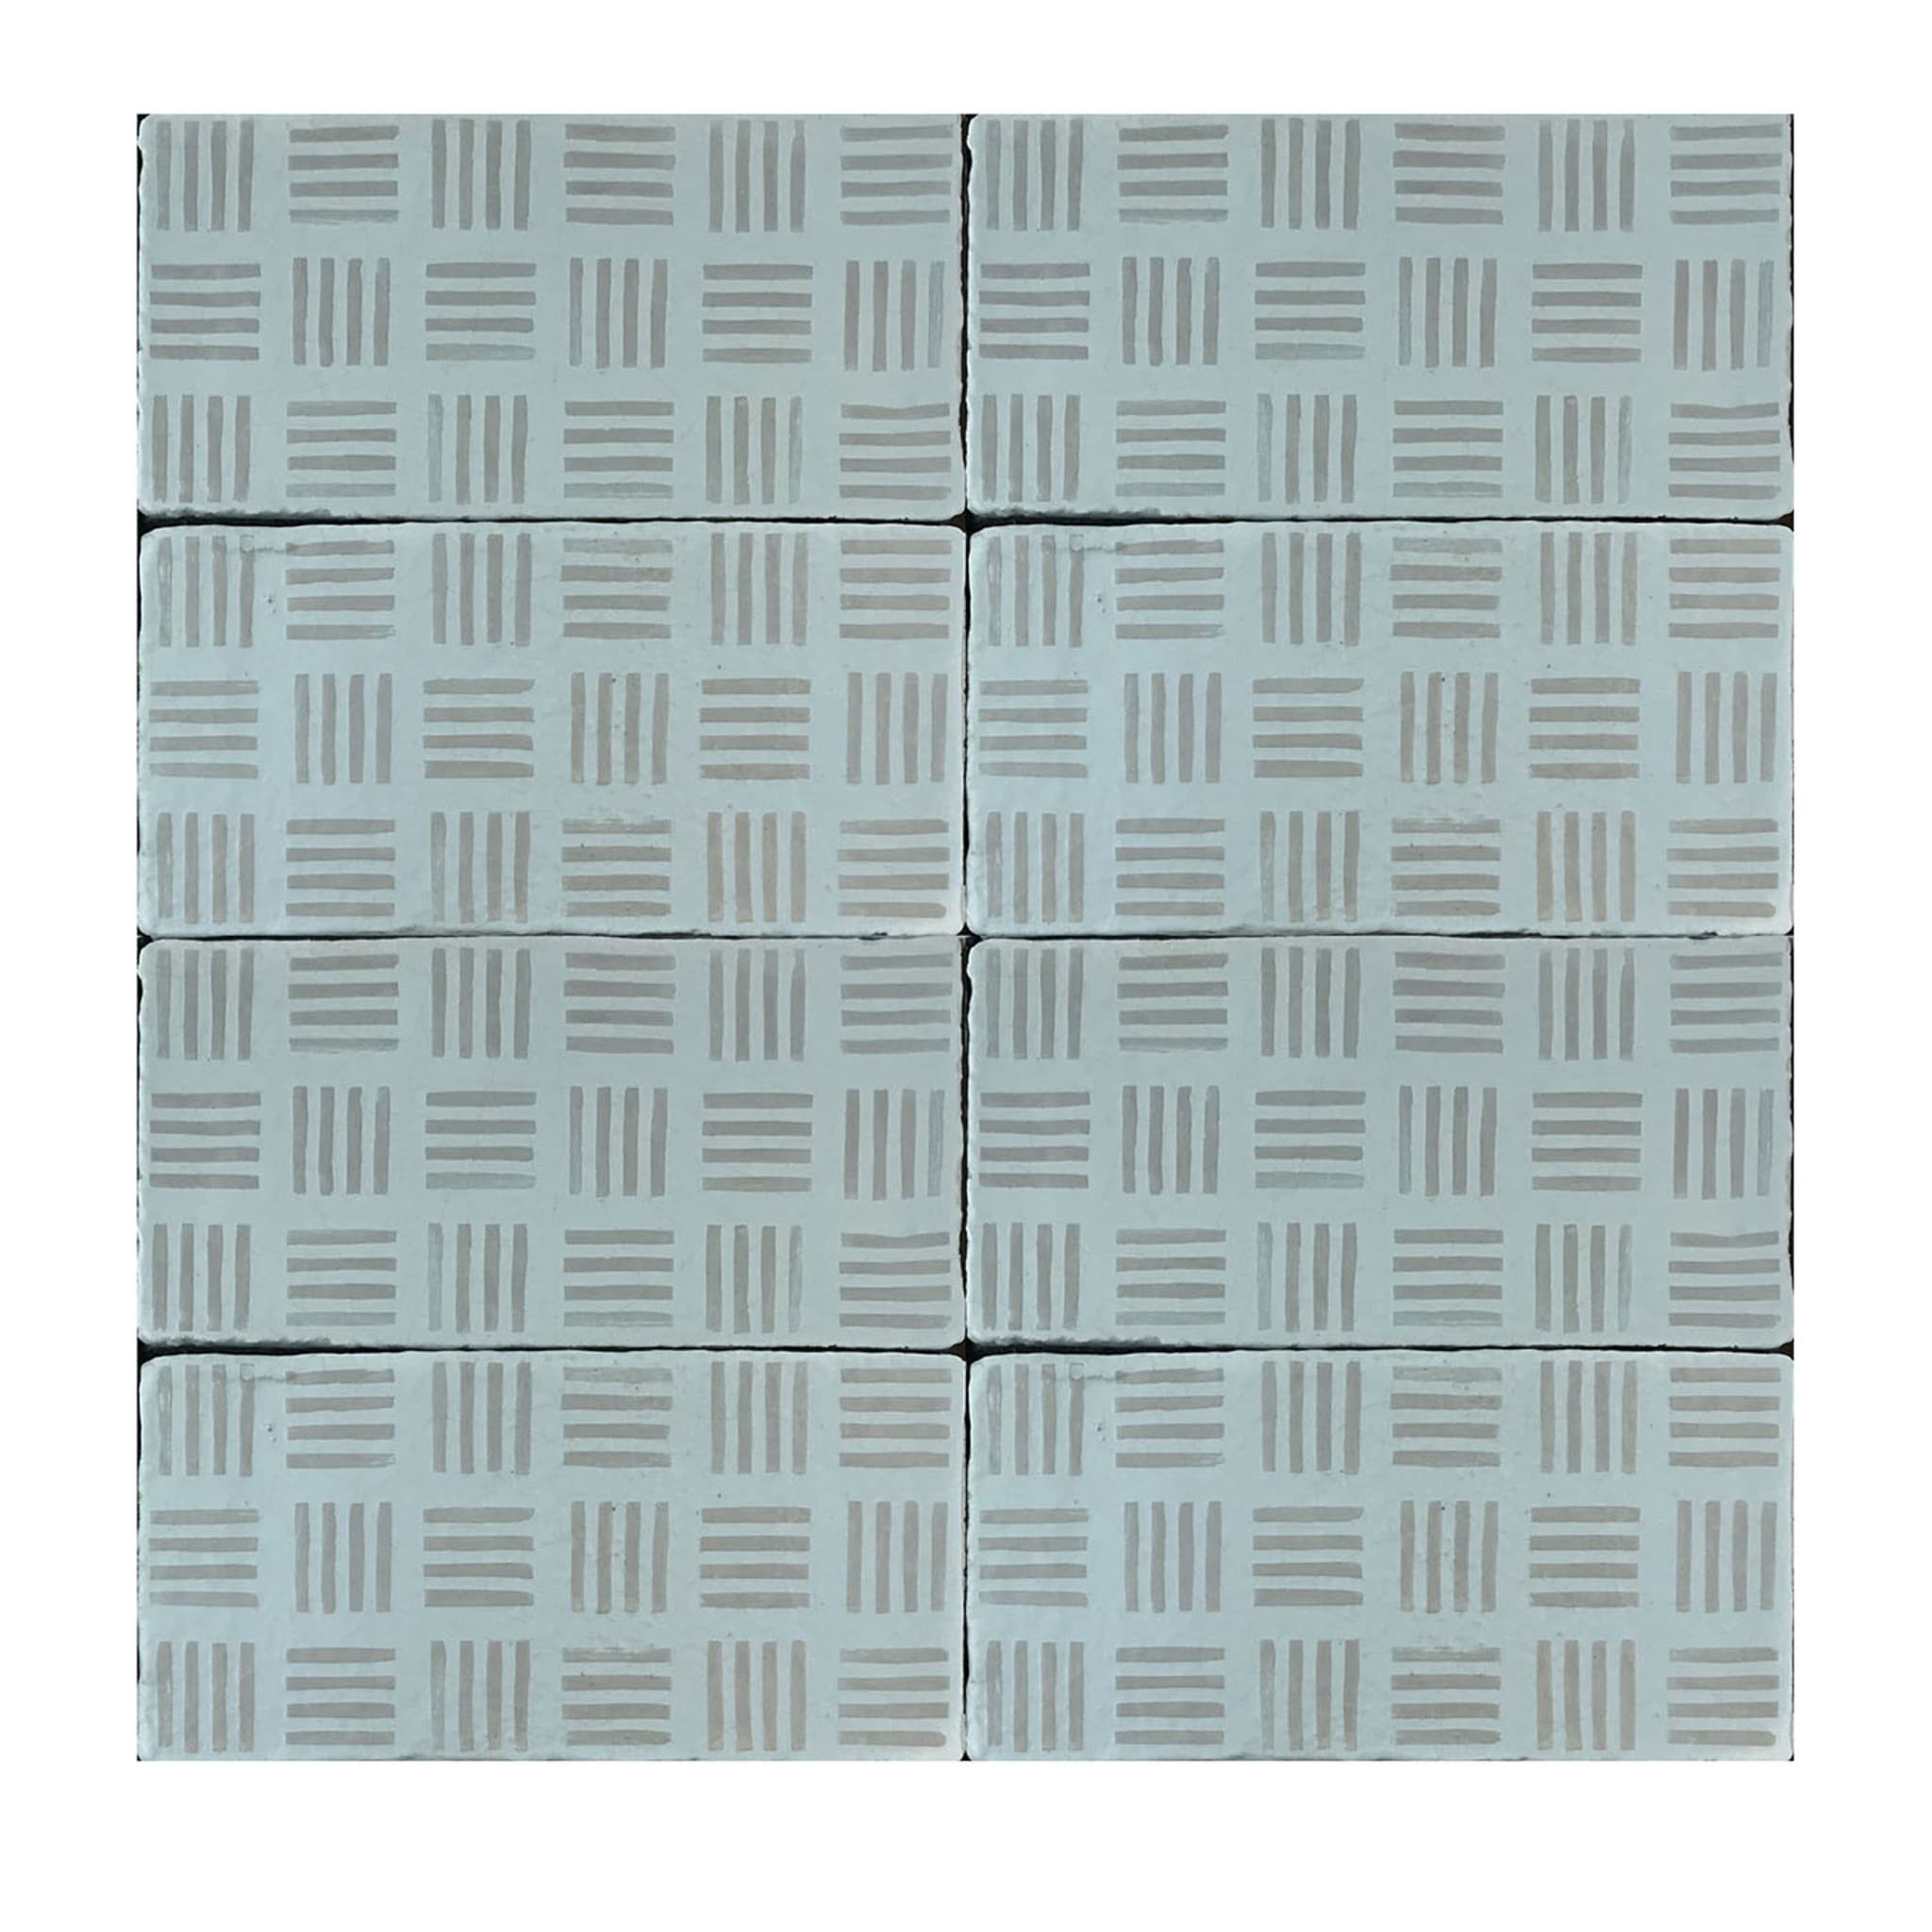 Daamè Set di 50 piastrelle rettangolari grigio chiaro #2 - Vista principale